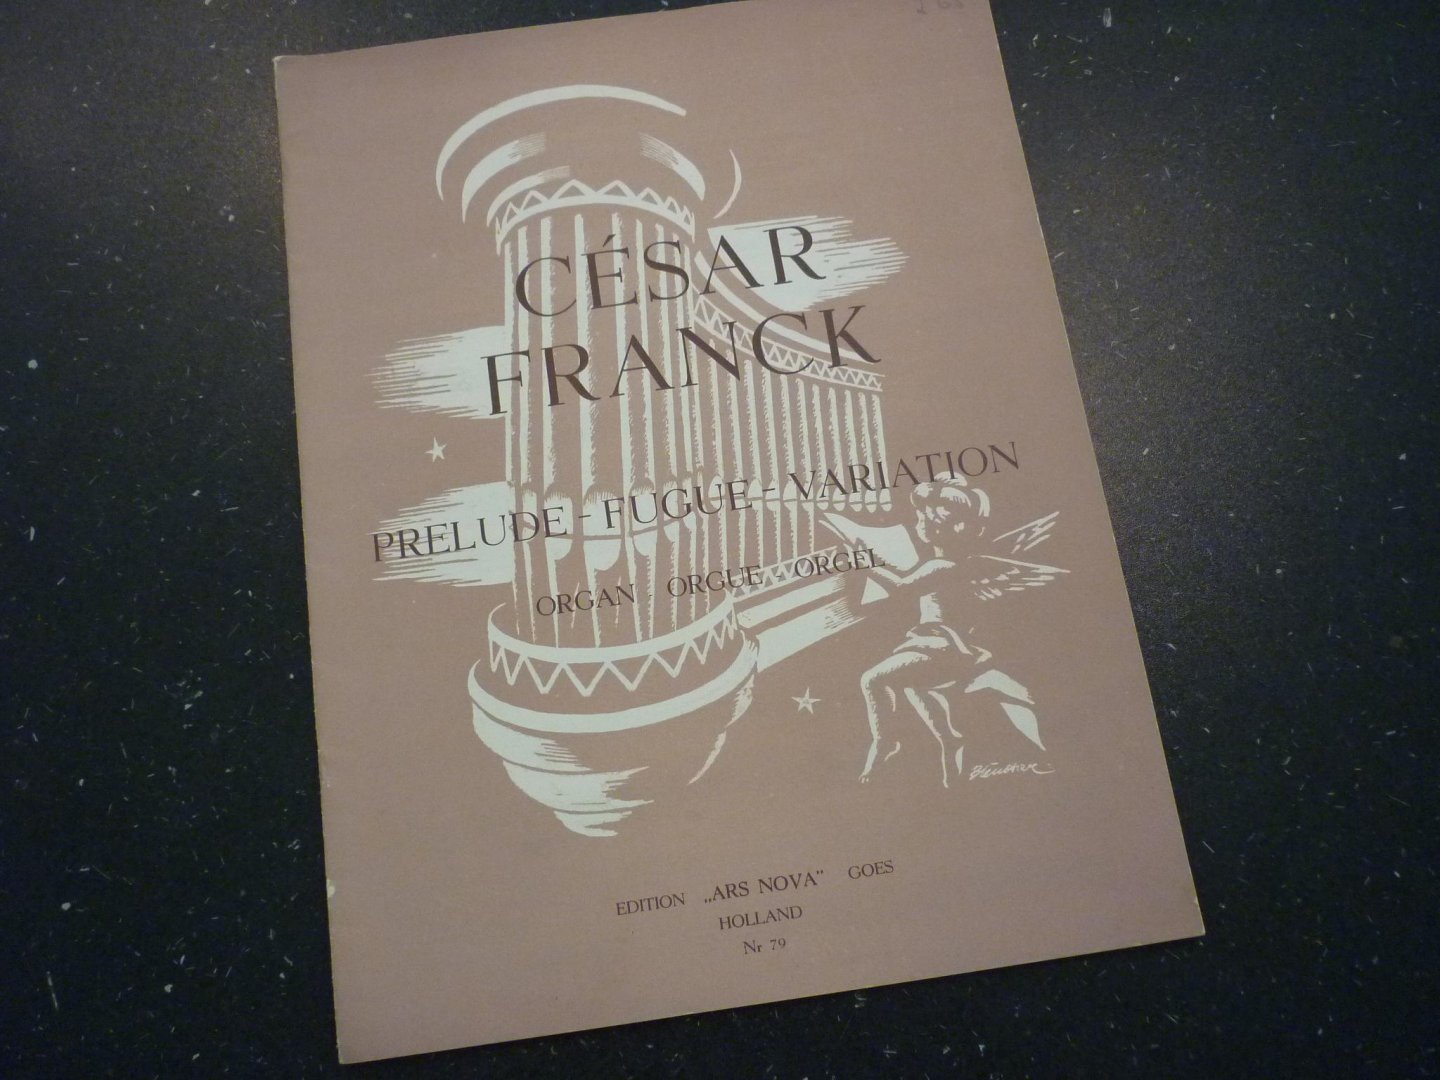 Franck; César - Prelude - Fugue - Variation; voor orgel